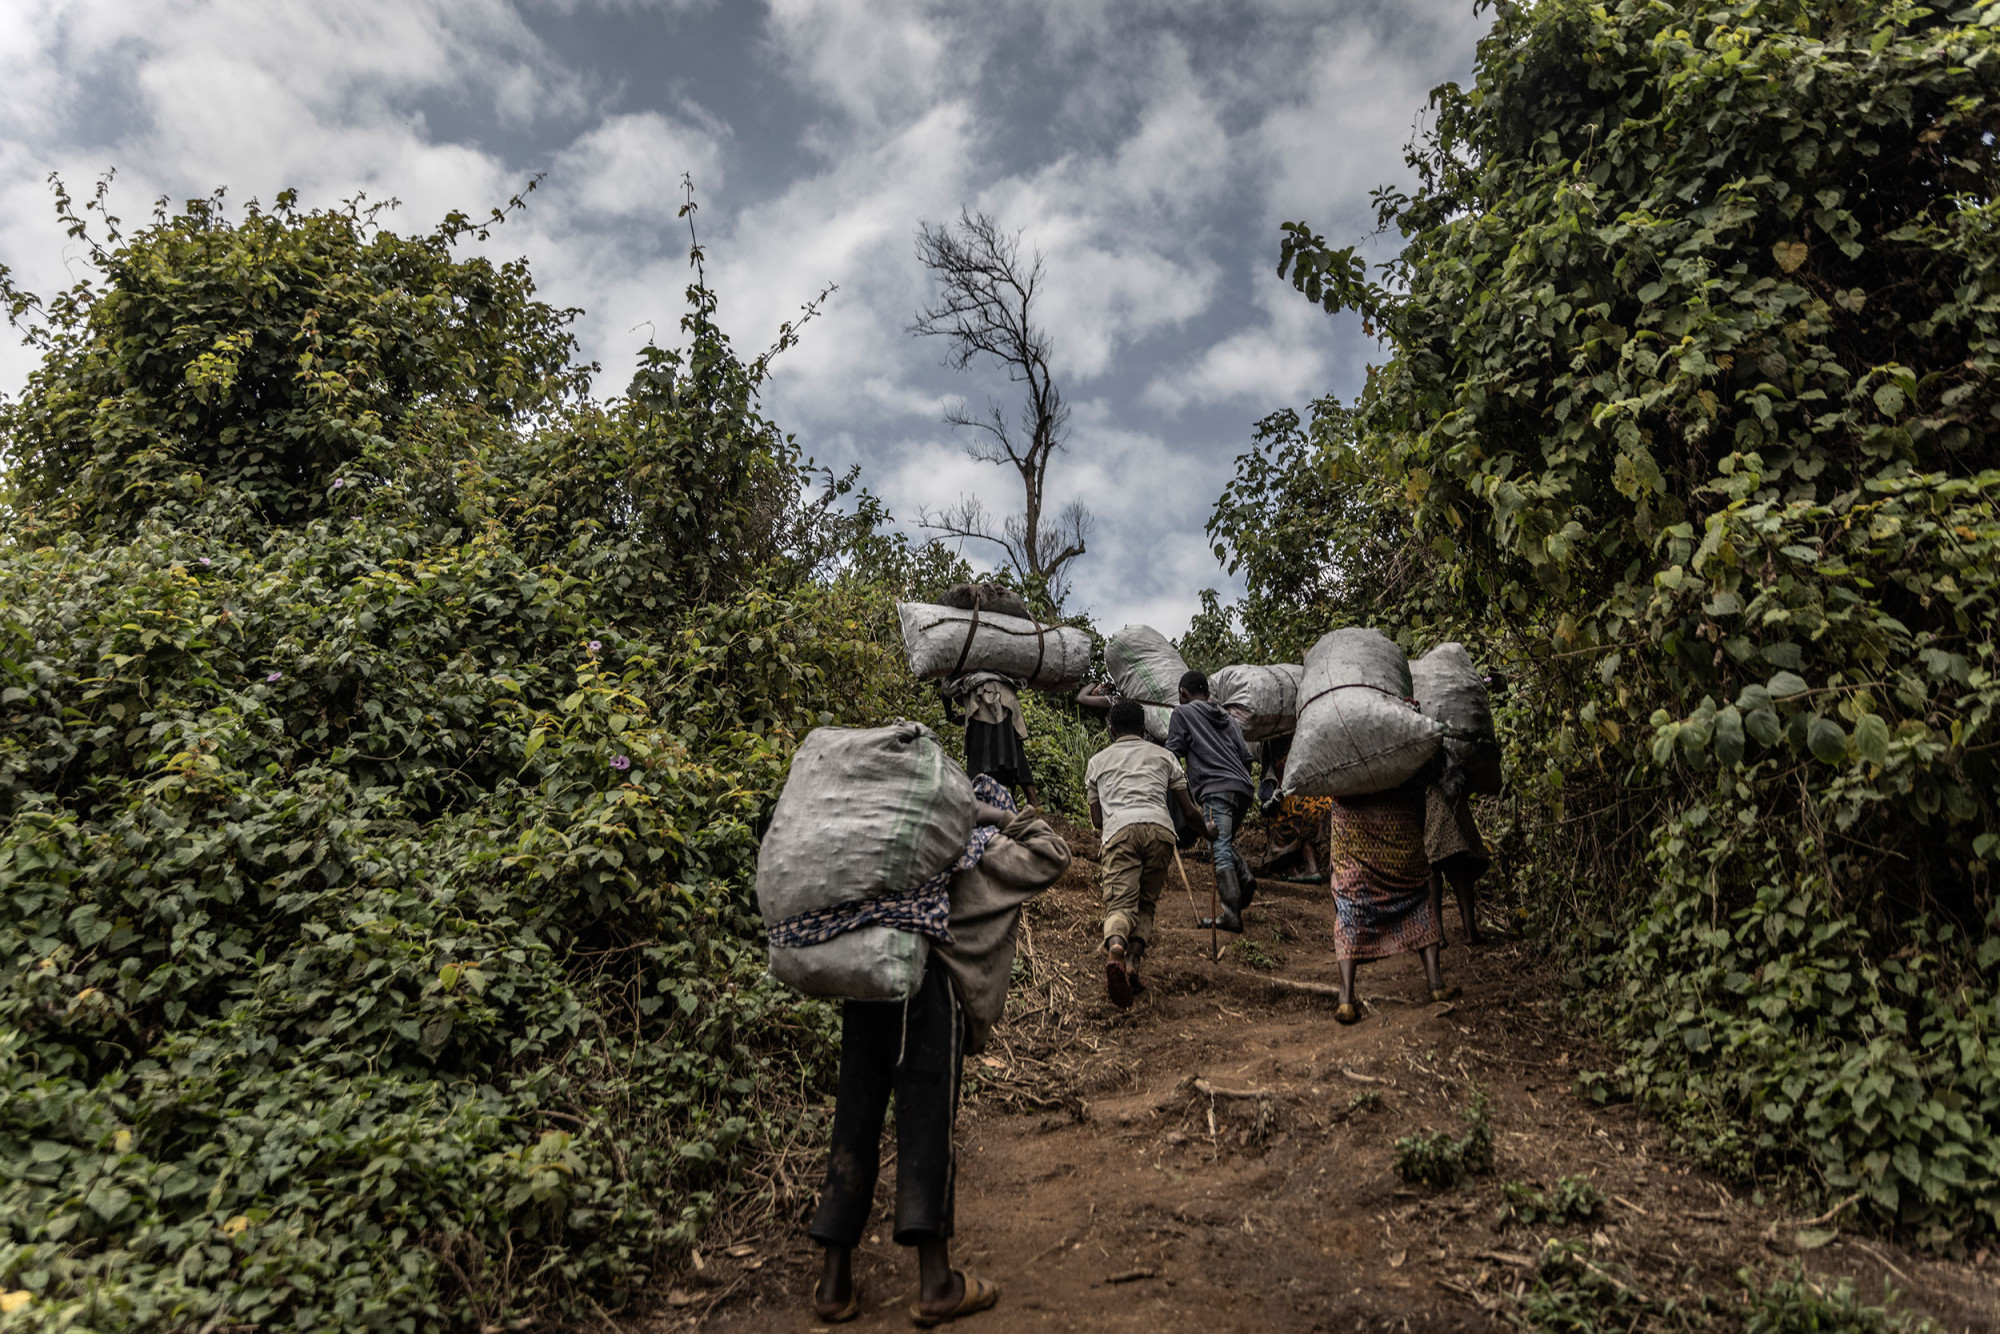 Bugamanda, parc national de Kahuzi-Biega, 3 septembre 2021. Un groupe de femmes de la communauté Batwa grimpe avec des sacs de charbon de bois qu’elles rapportent au village pour les vendre. © Guerchom Ndebo pour la Fondation Carmignac.